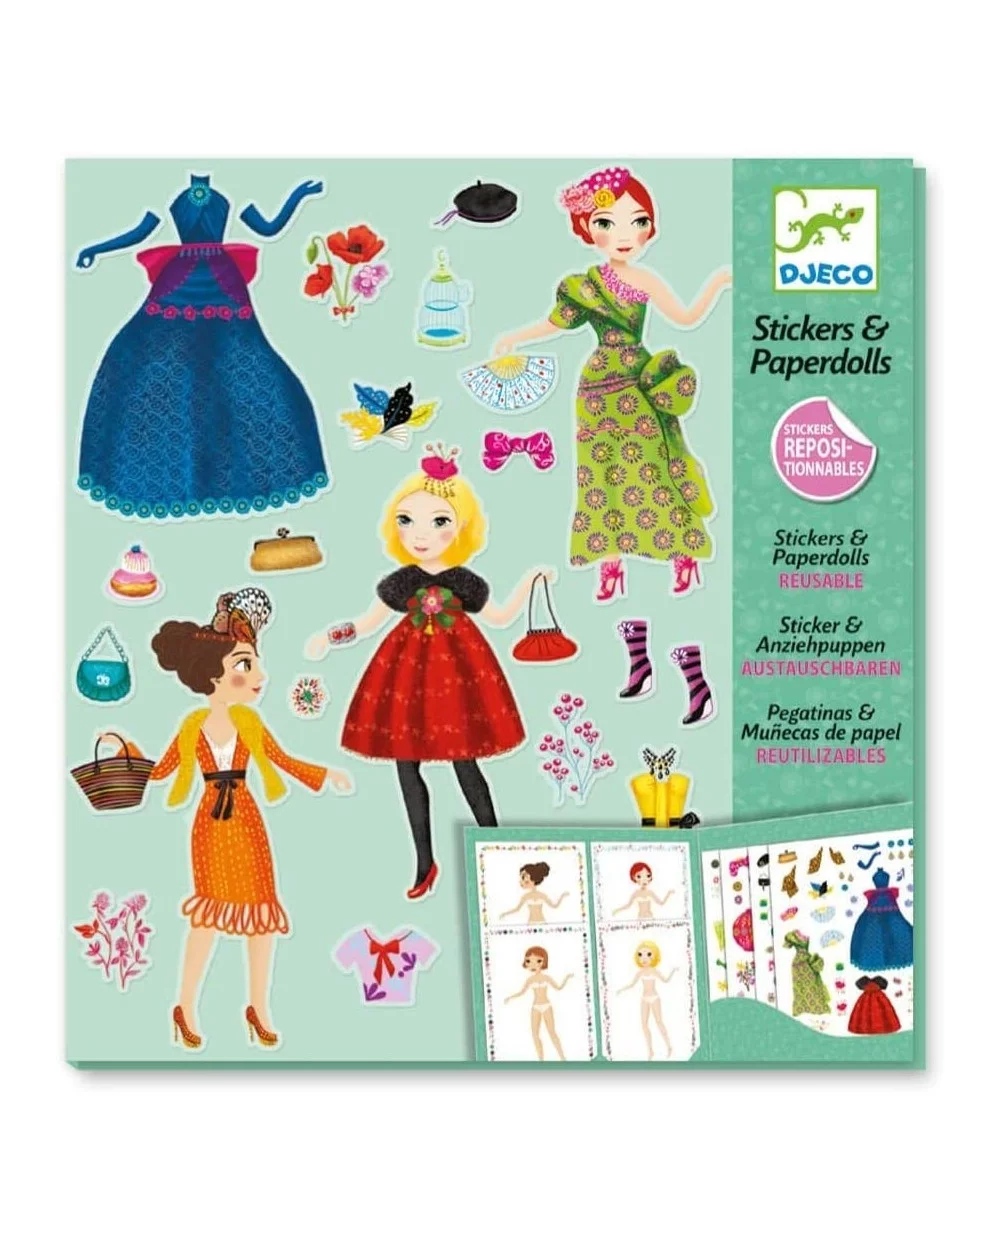 Stickers e Paperdoll Moda Djeco